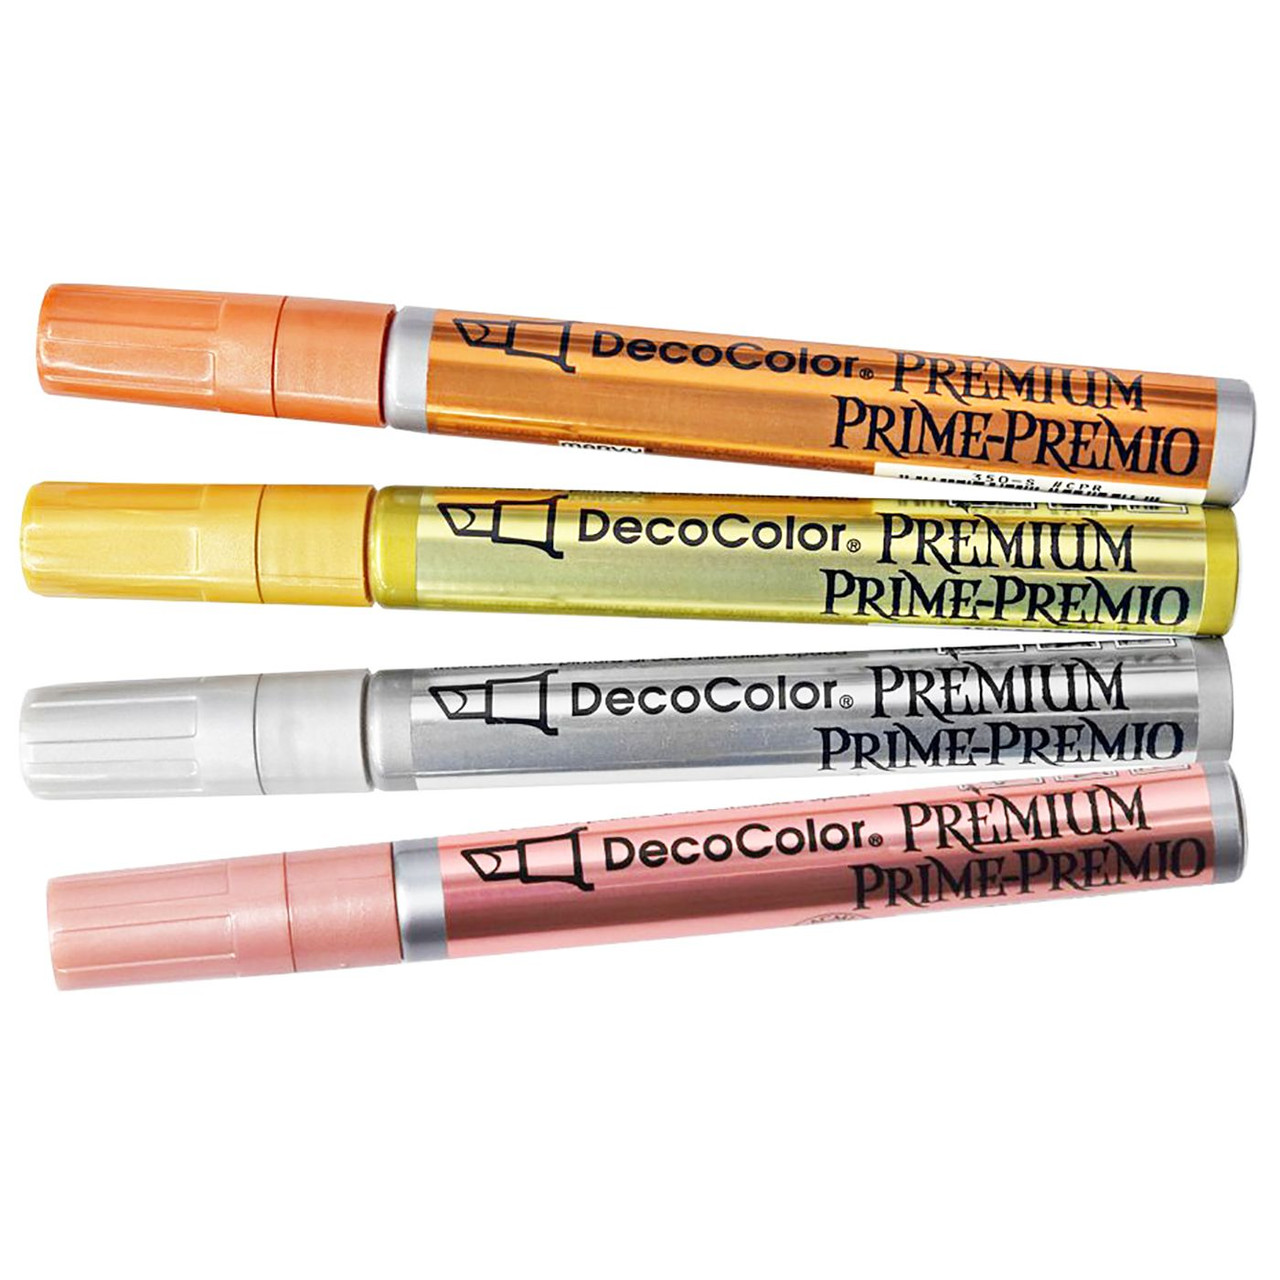 DecoColor Premium Paint Marker - Silver Chisel Tip